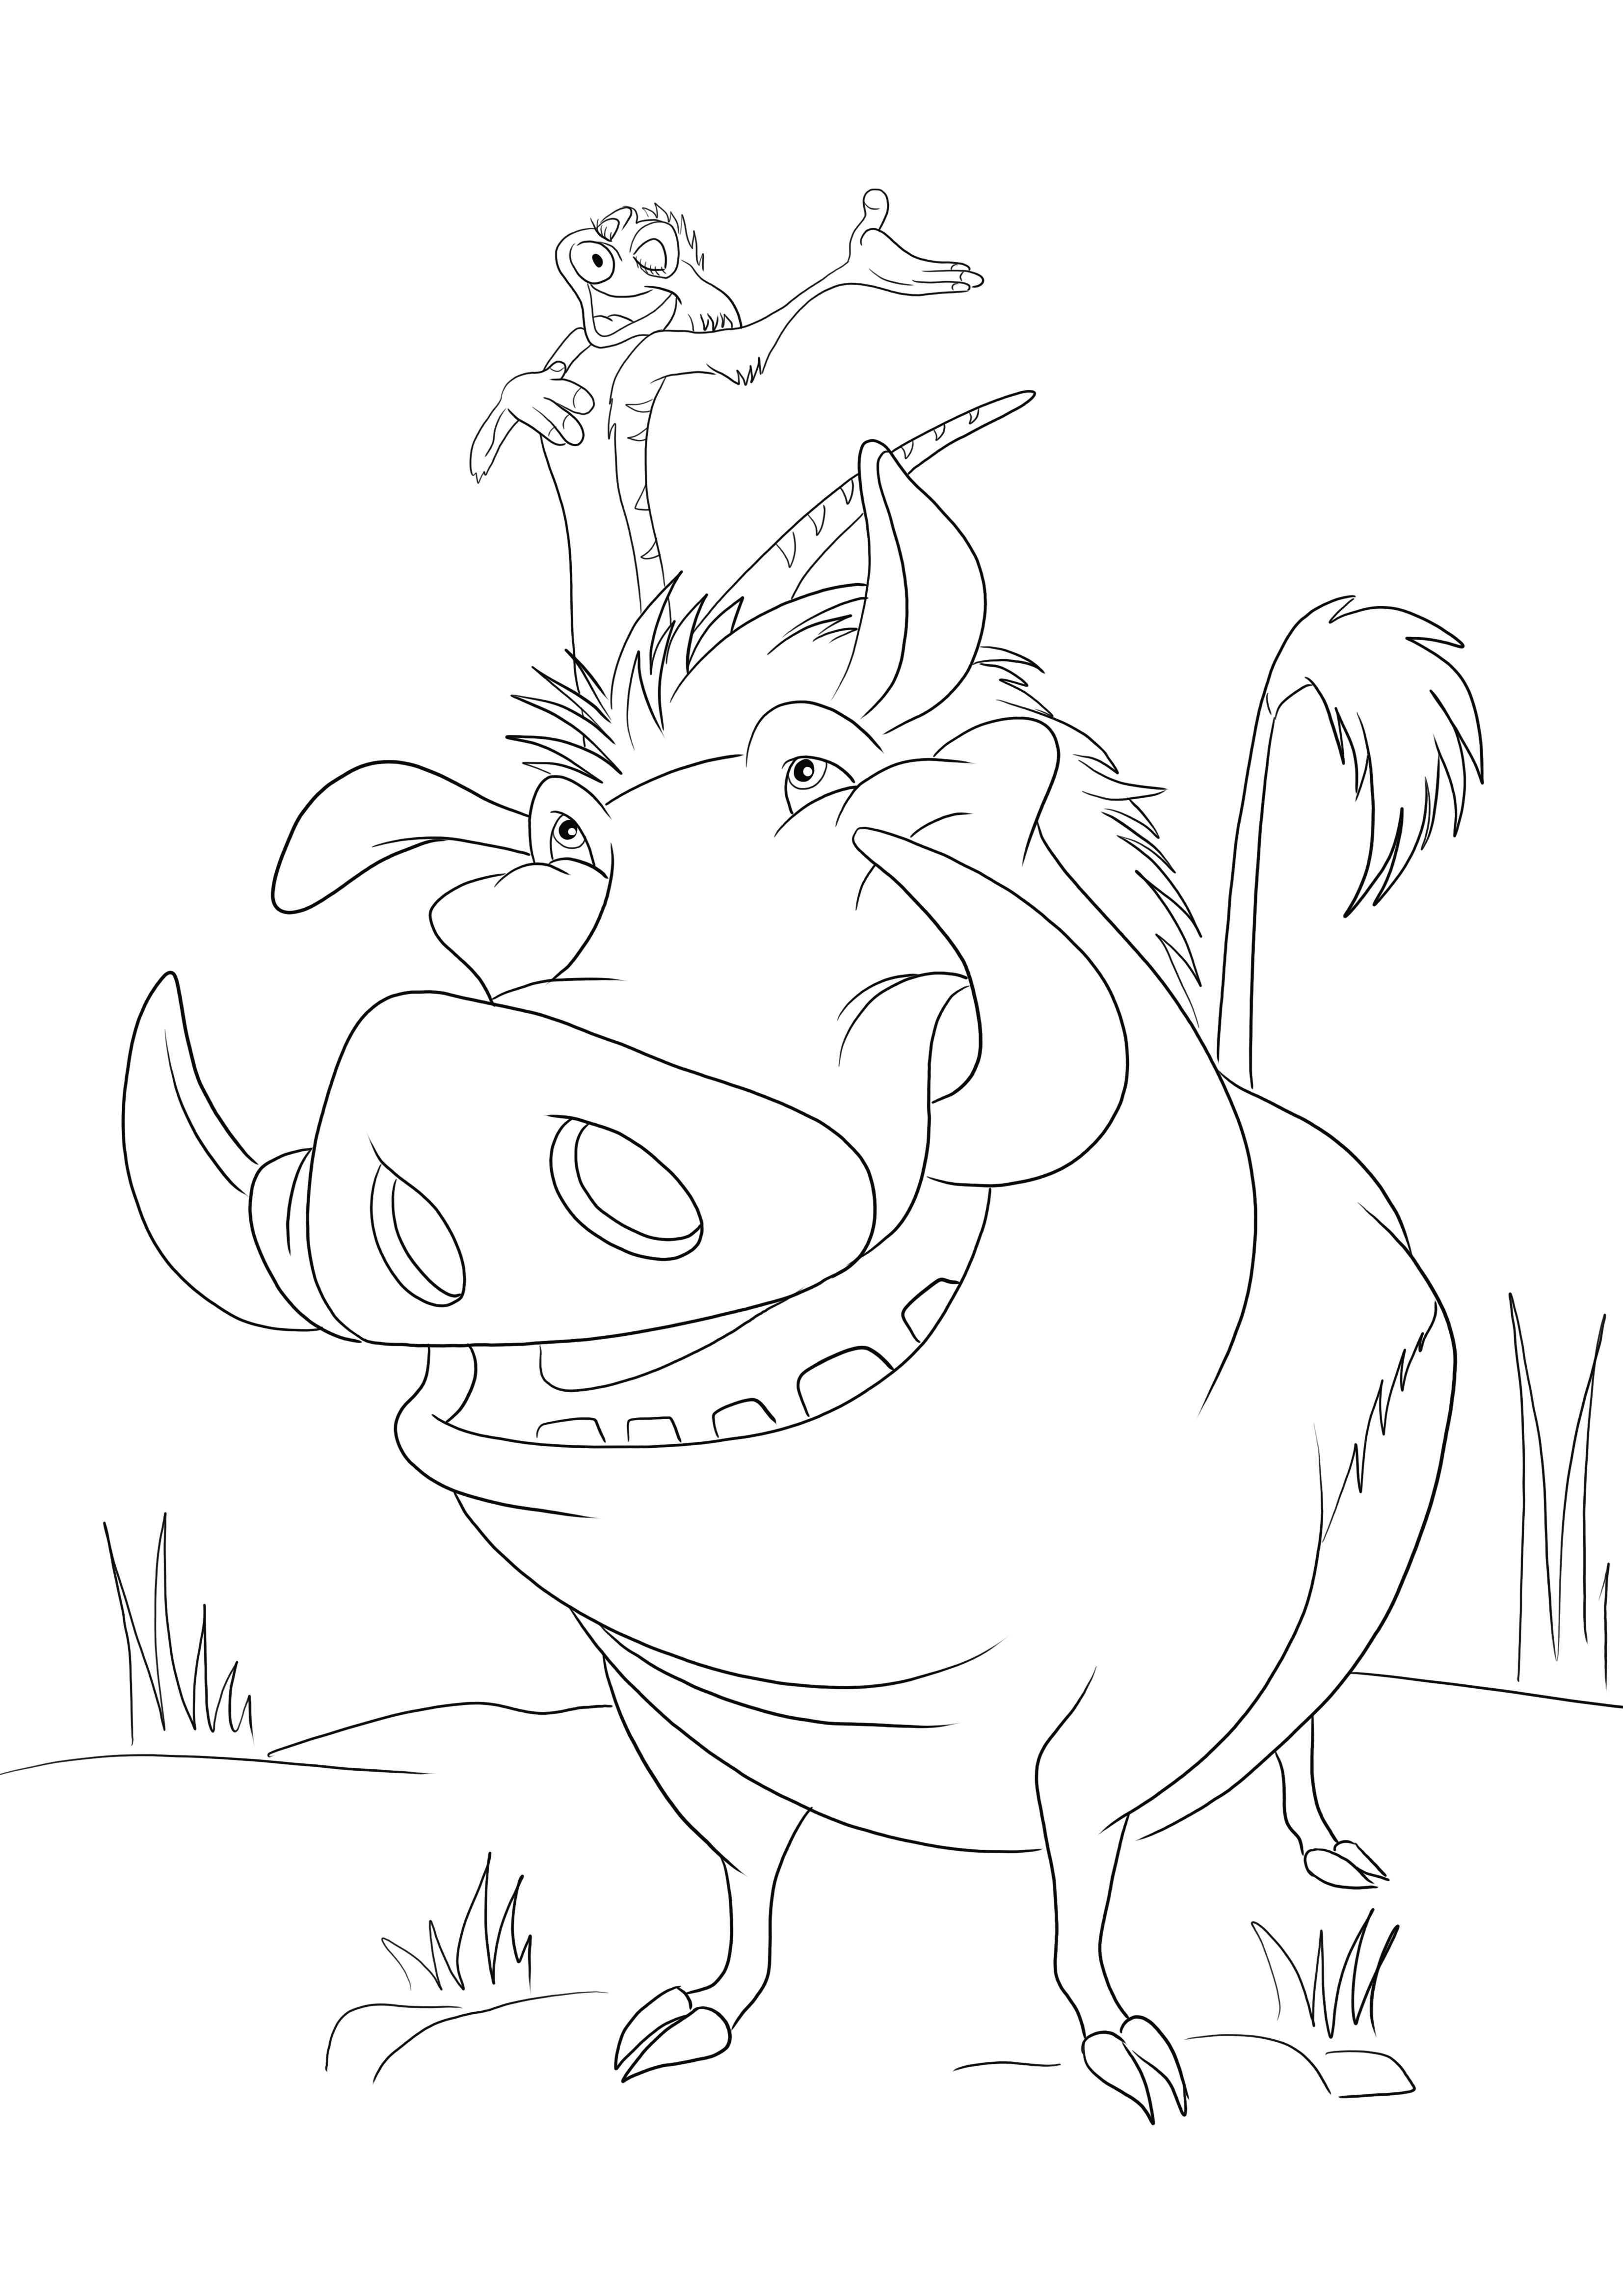 Dibujos animados de Timon y Pumba del Rey León imprimibles gratis para colorear fácilmente